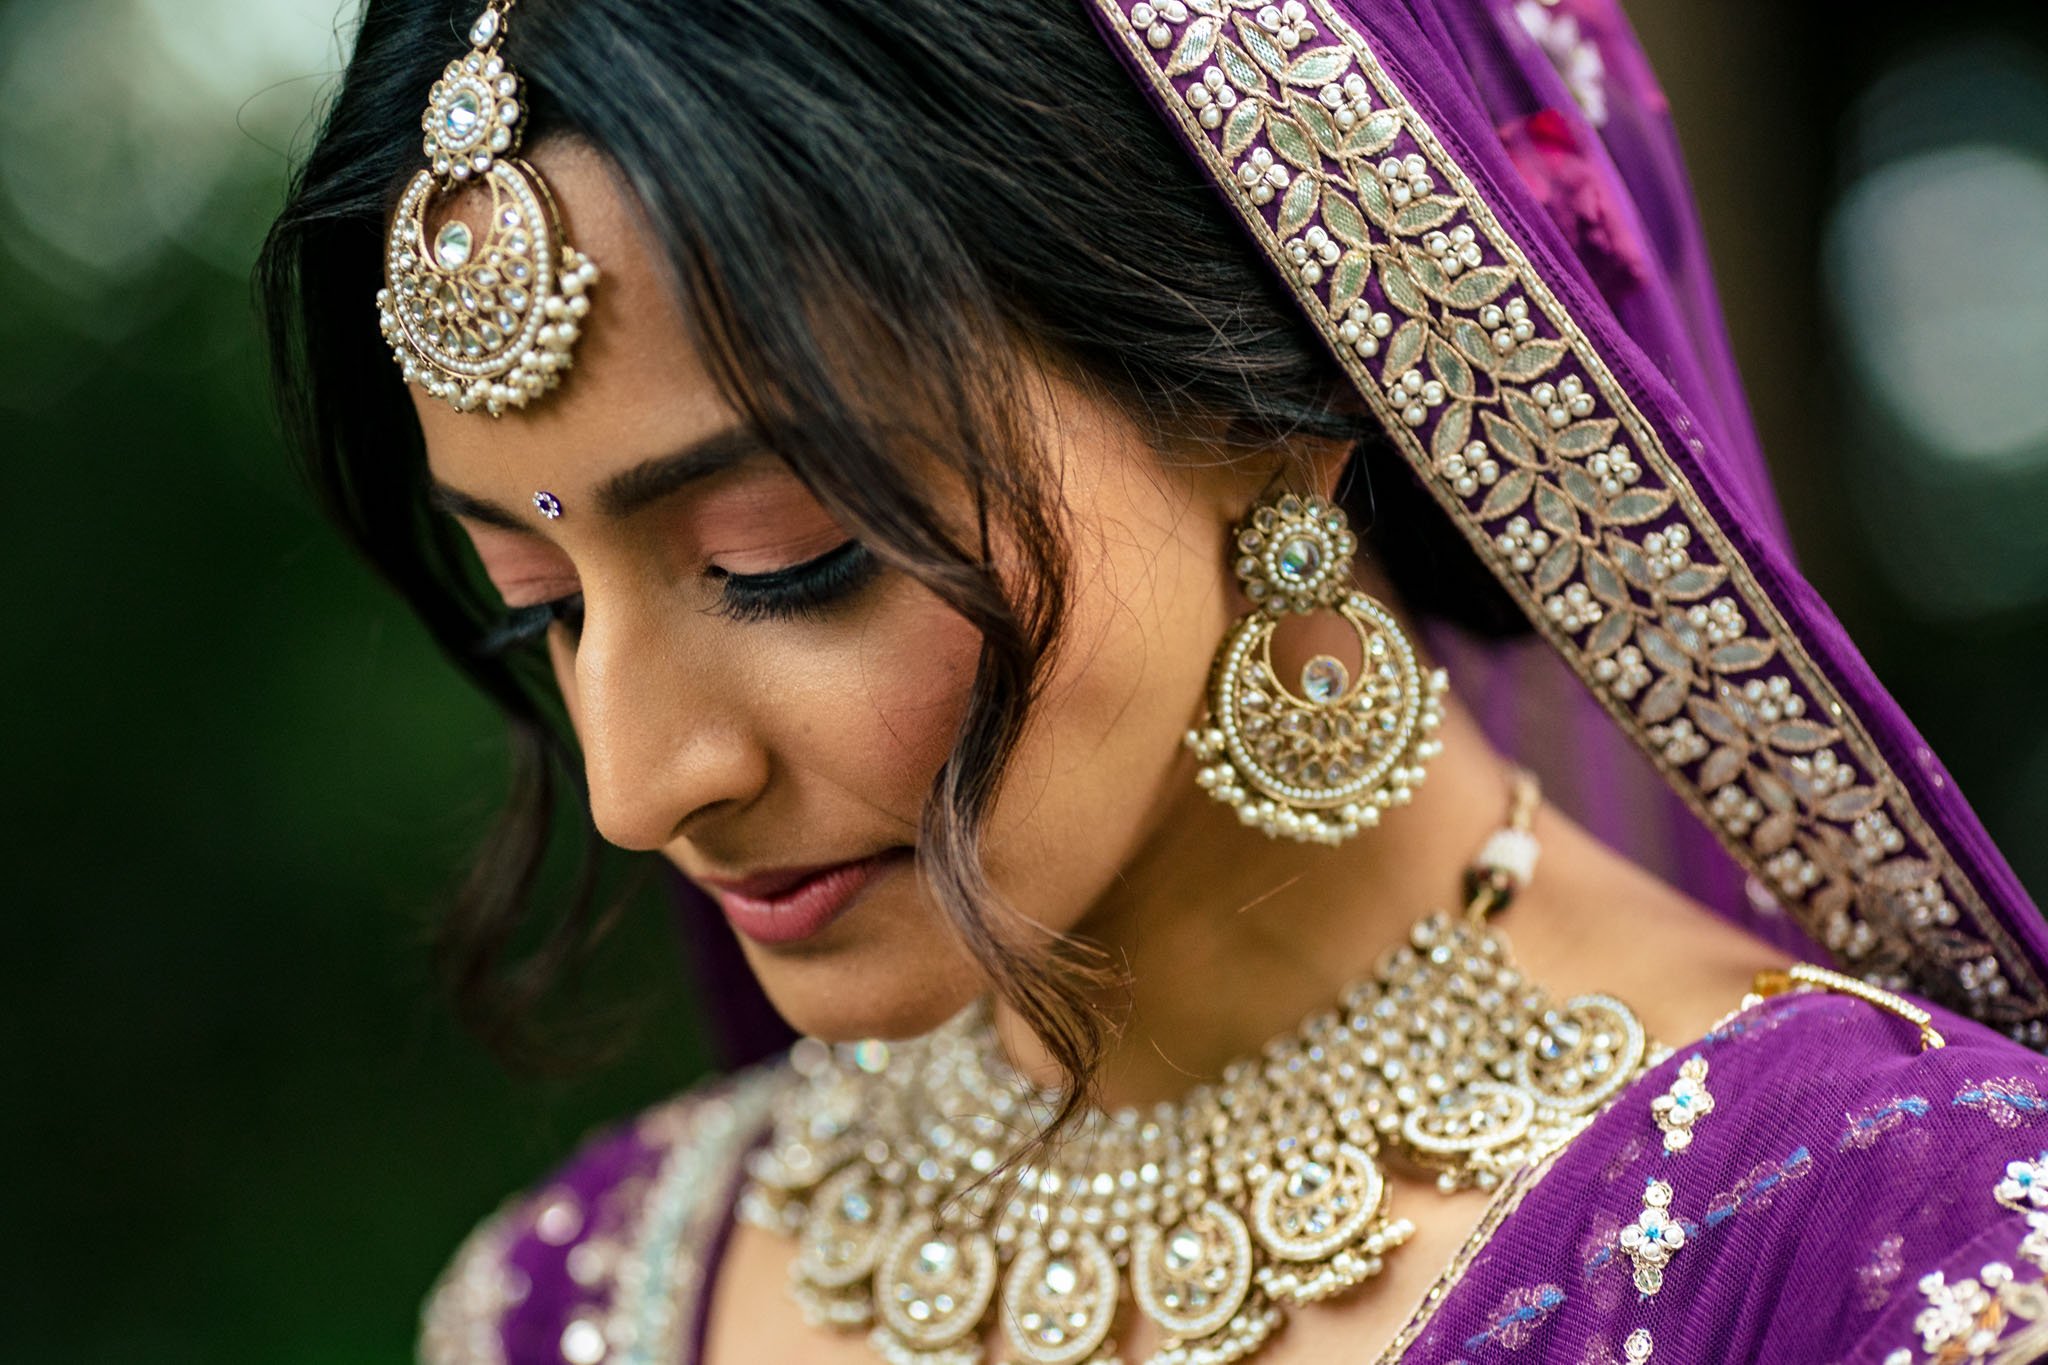 A beautiful Indian bride in a purple sari at a Biltmore Estate wedding.